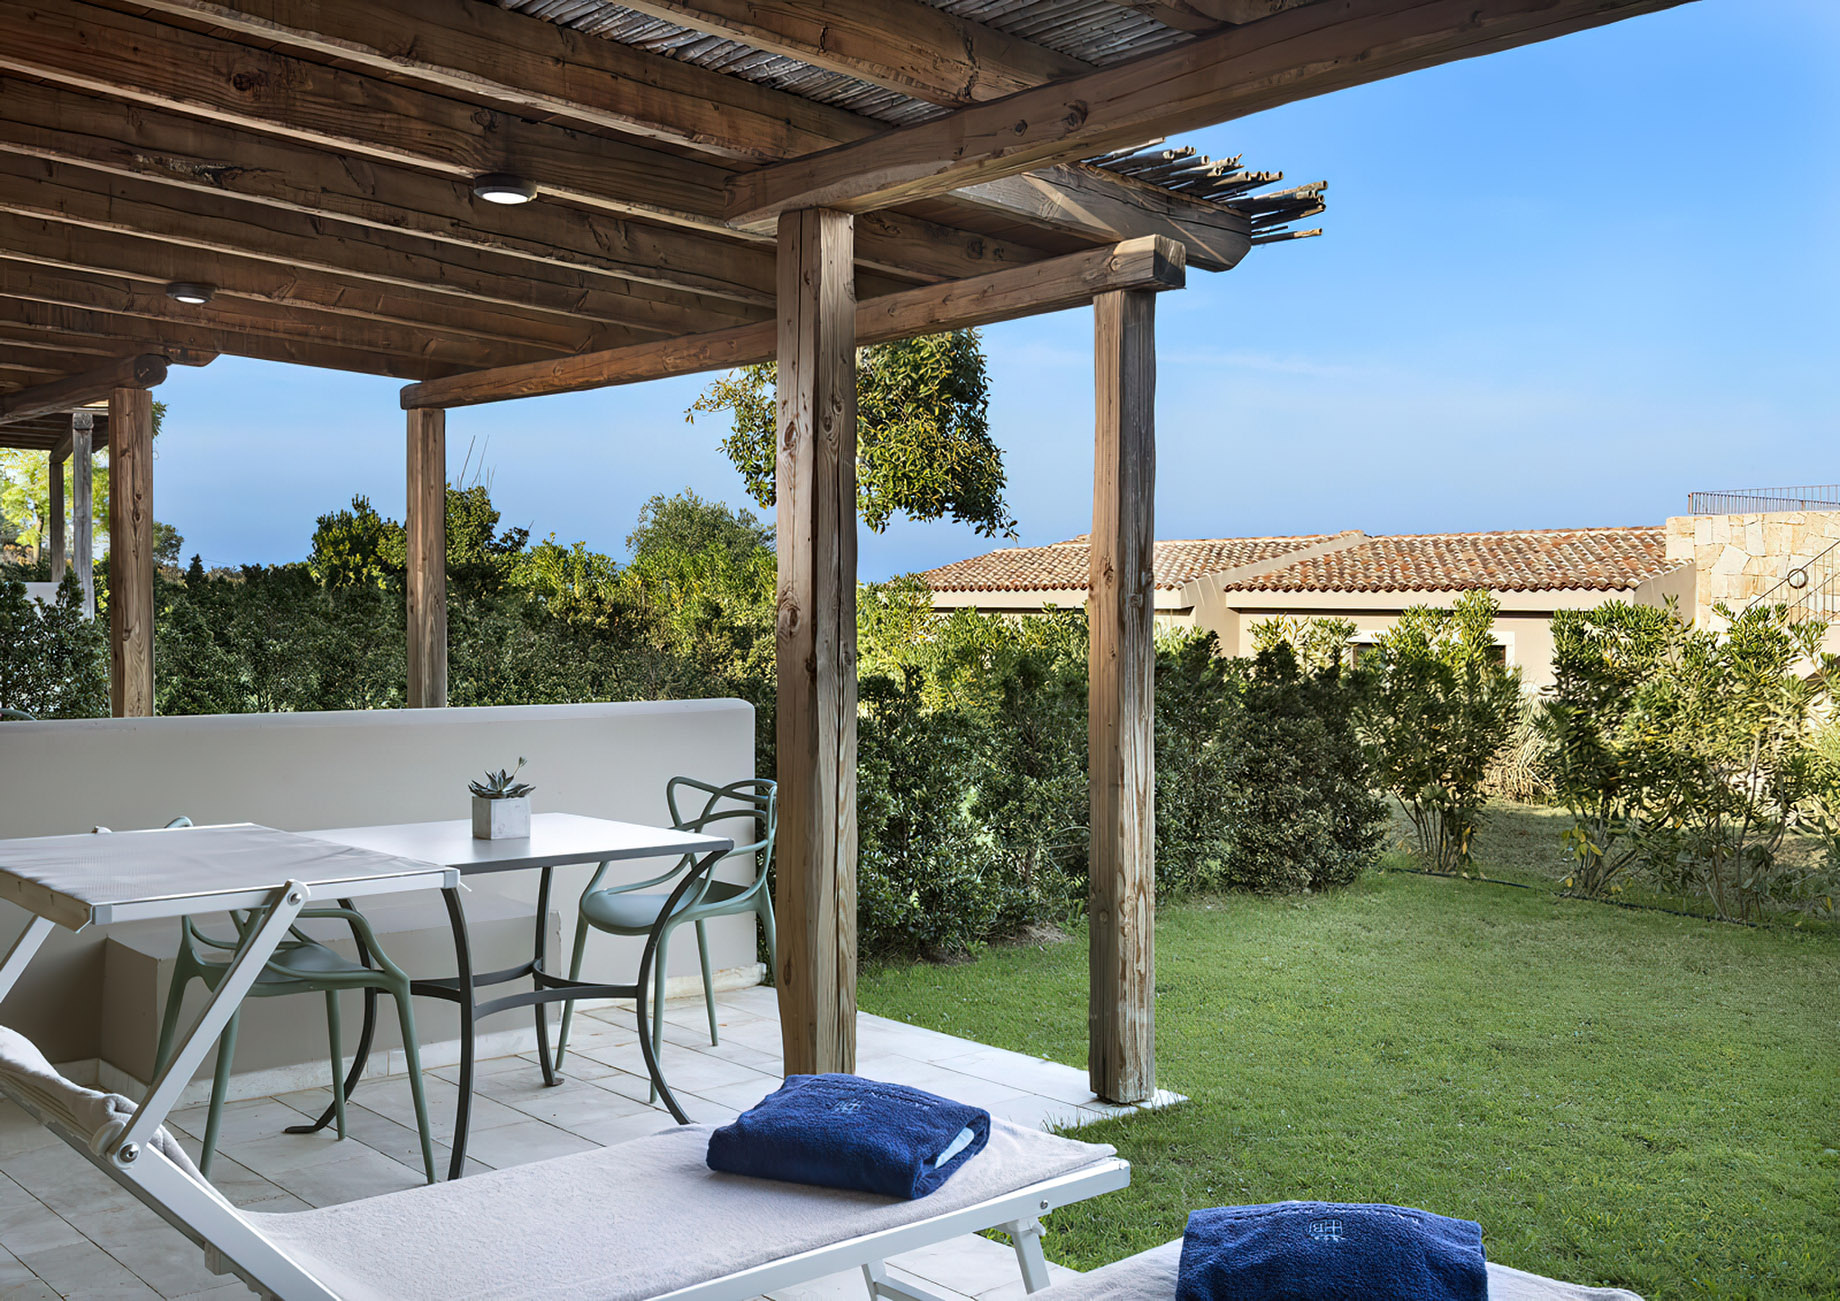 Baglioni Resort Sardinia – San Teodoro, Sardegna, Italy – Junior Suite Deck